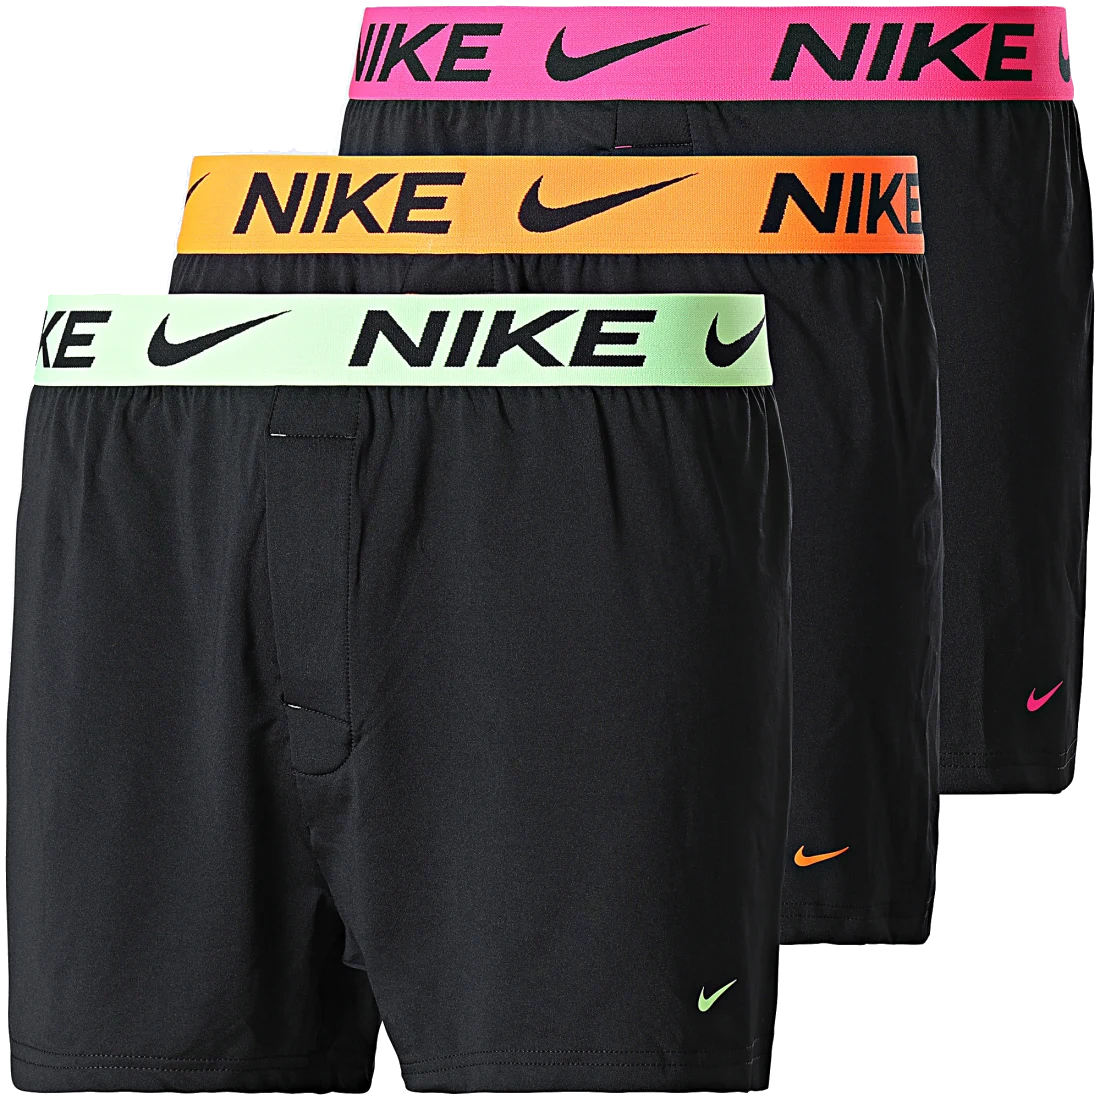 Boxershorts Nike Dri-FIT Micro Knit 3 pcs